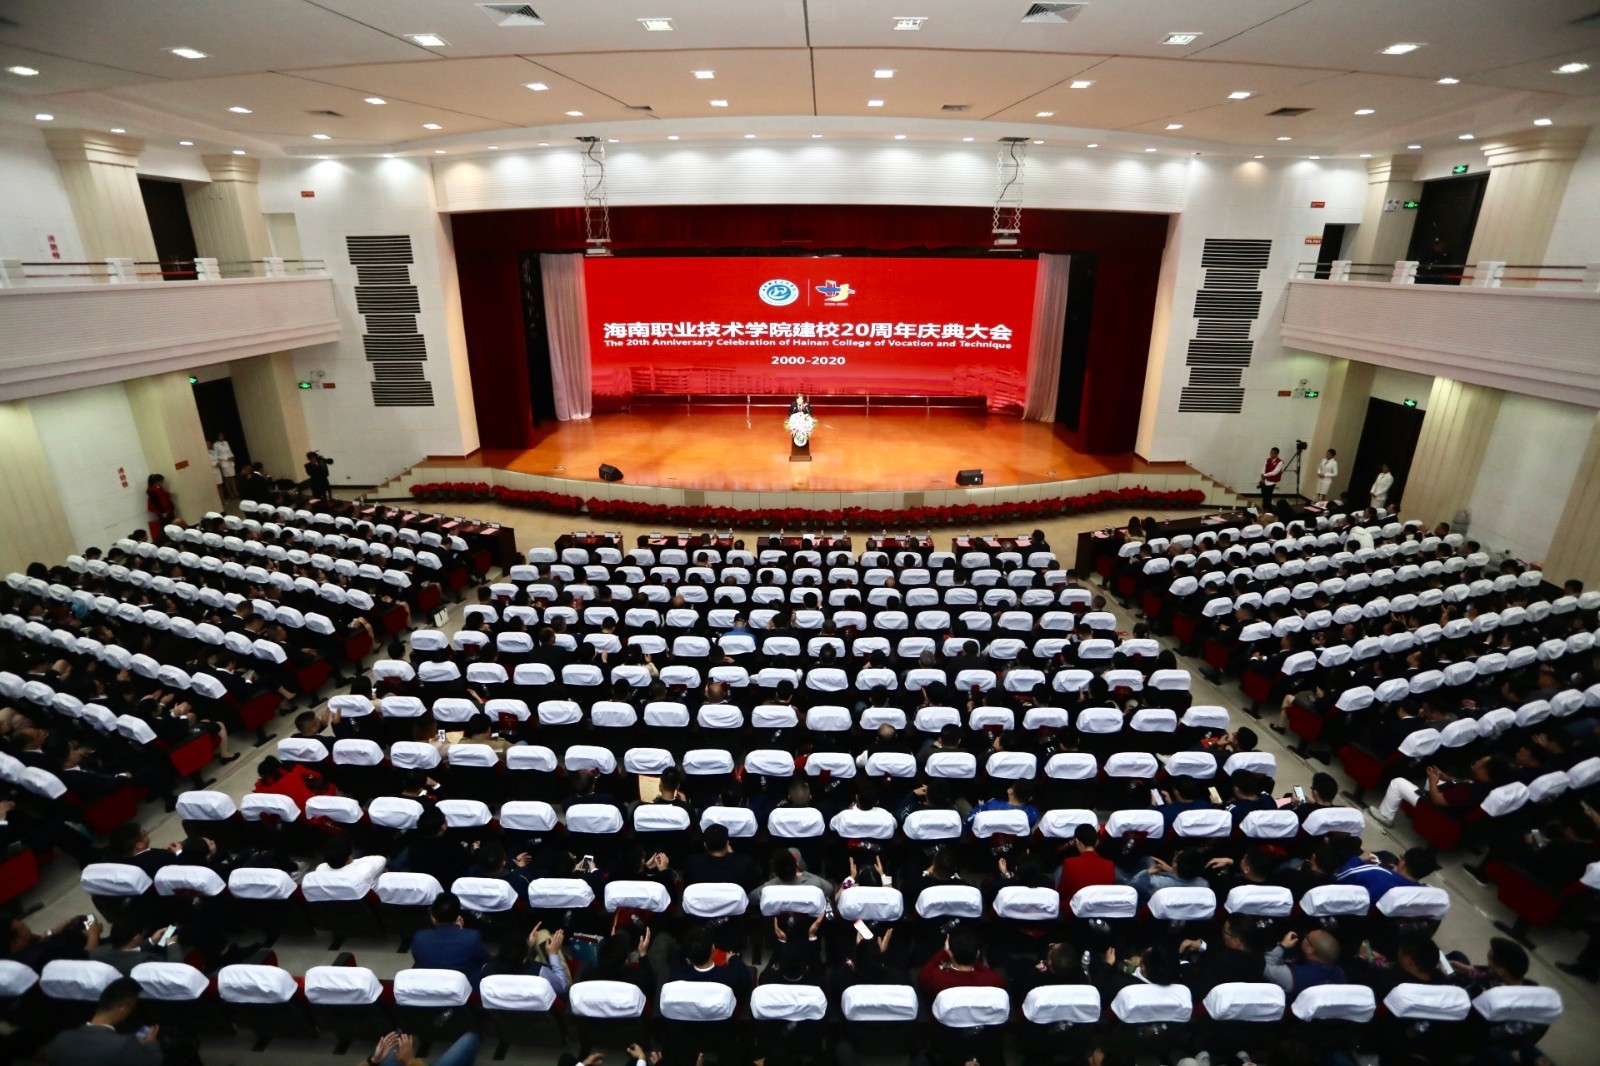 海南职业技术学院举行建校二十周年庆典大会